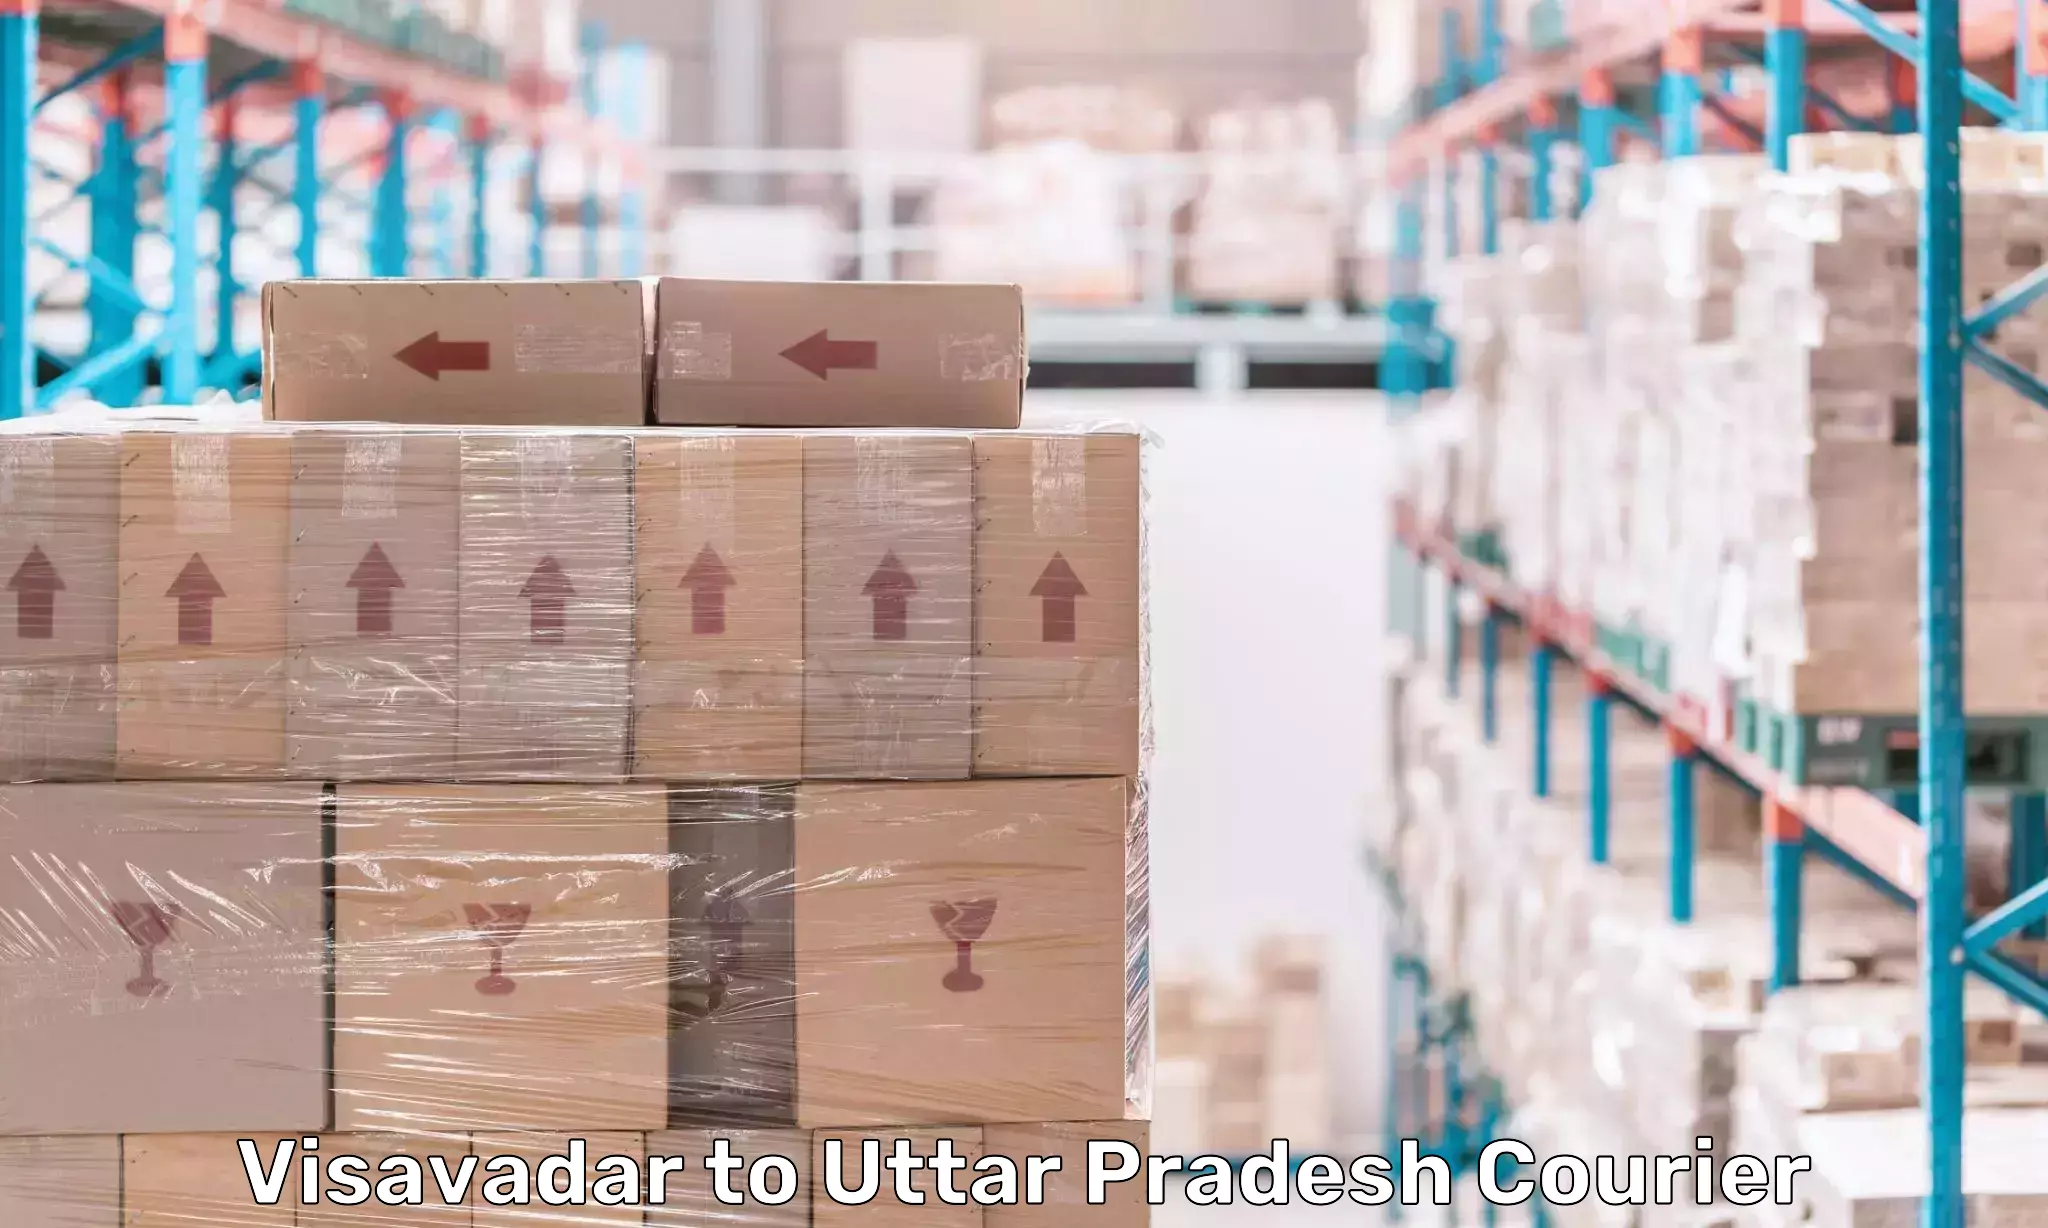 Efficient parcel tracking Visavadar to Uttar Pradesh